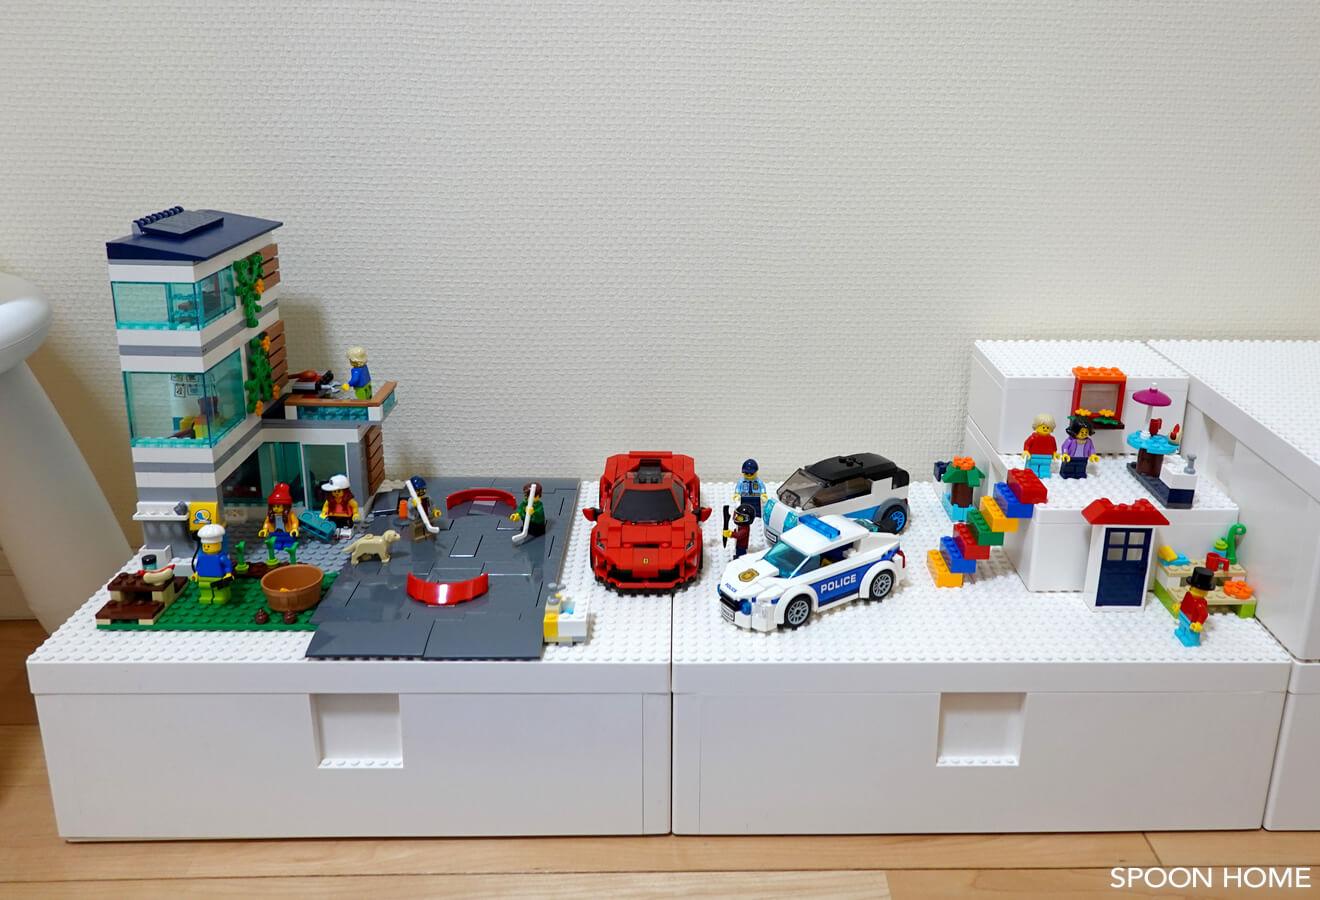 IKEAとレゴのコラボ商品「BYGGLEK」ボックス収納例とブロックセットの 